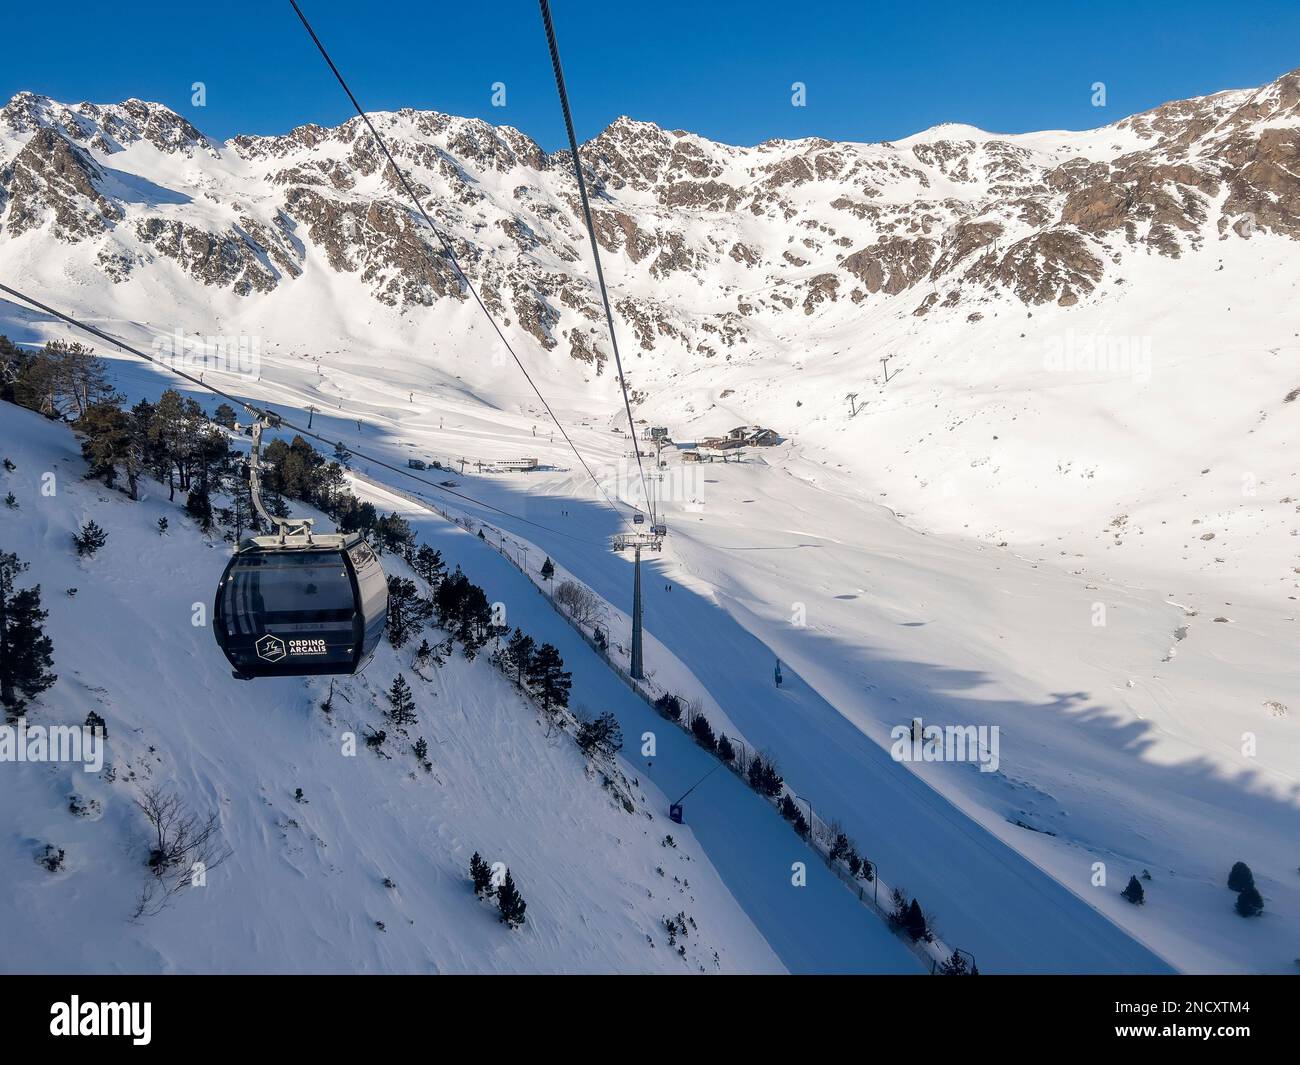 Vue d'hiver sur la station de ski d'Ordino Arcalis, Andorre Banque D'Images